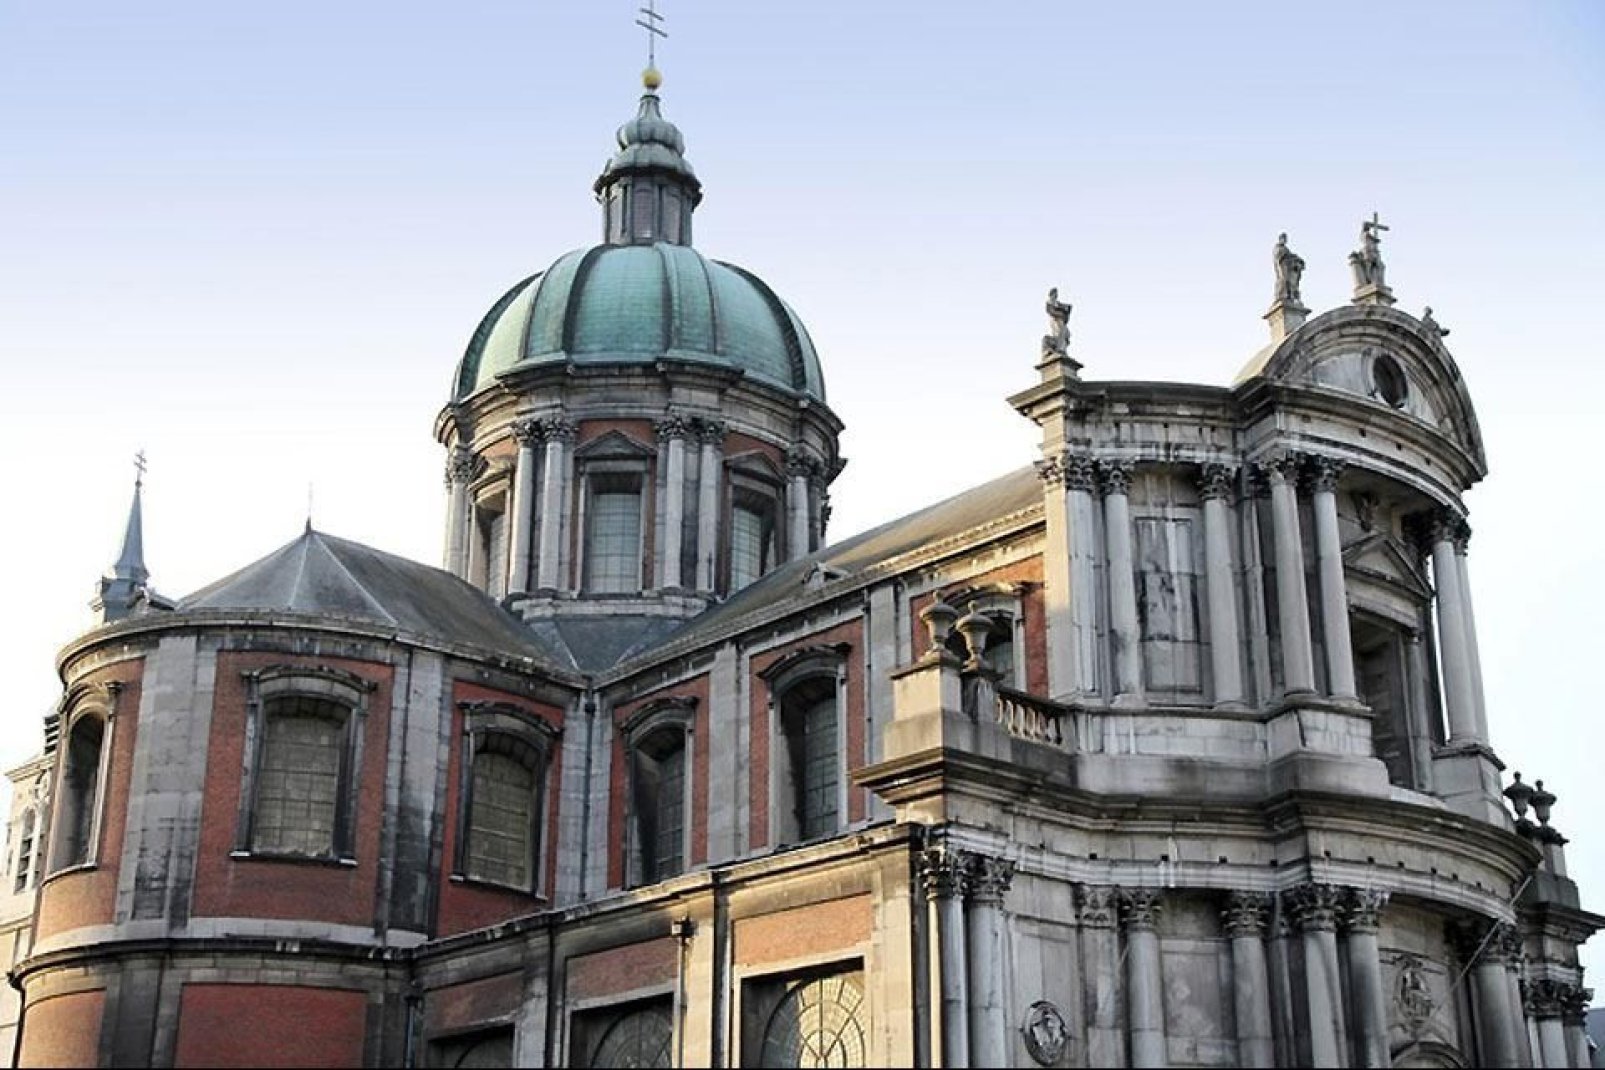 Diese Kathedrale ist einzigartig in ganz Belgien: Der typische Baustil des 18. Jahrhunderts vereint architektonische Einflsse aus Barock, Rokoko und Klassik.